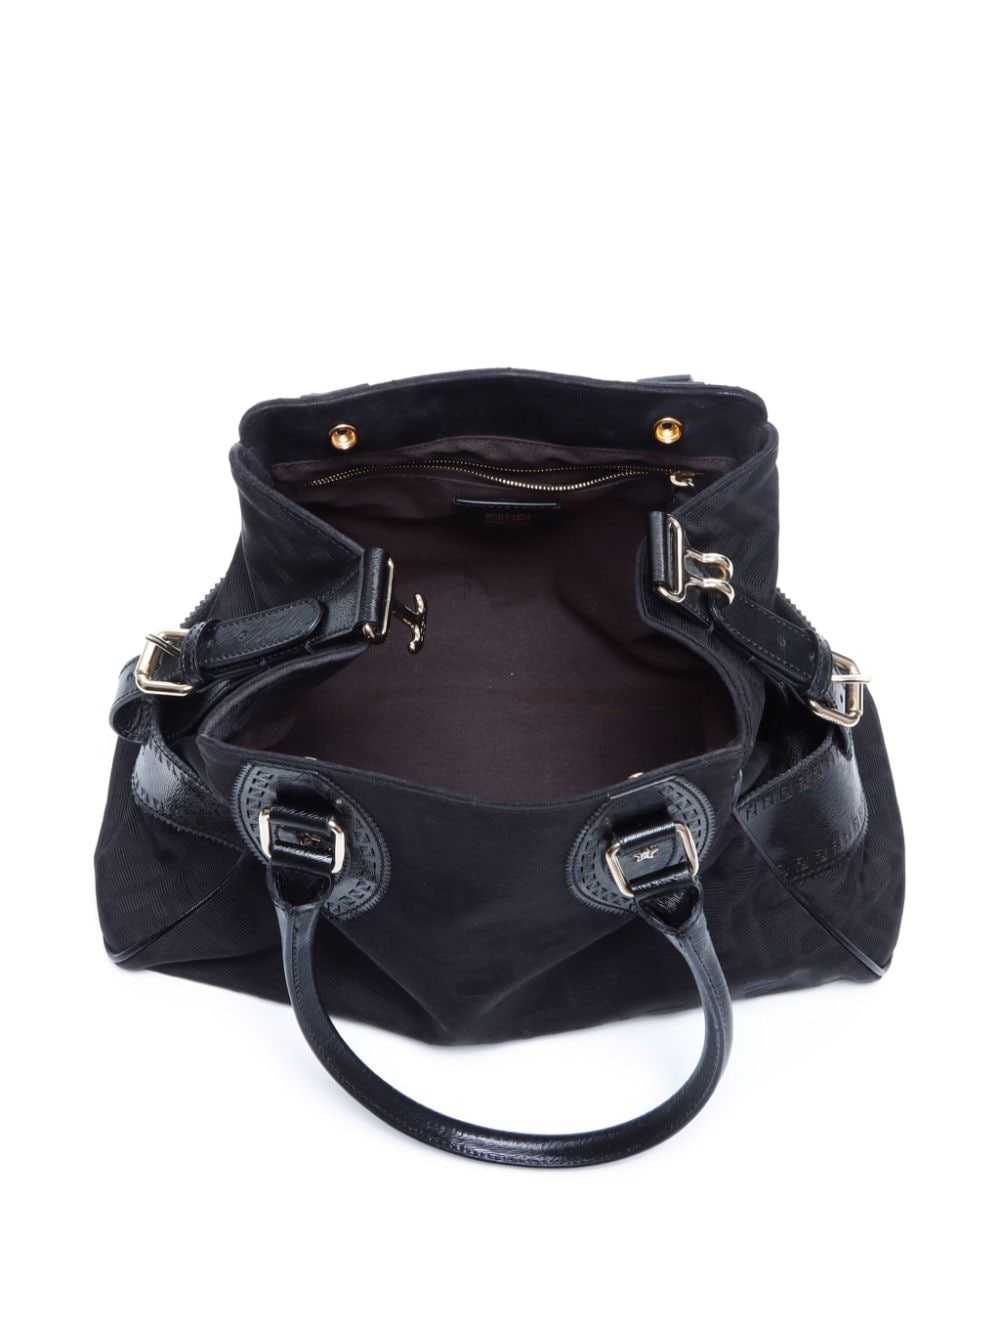 Fendi Pre-Owned Etniko Zucca handbag - Black - image 5